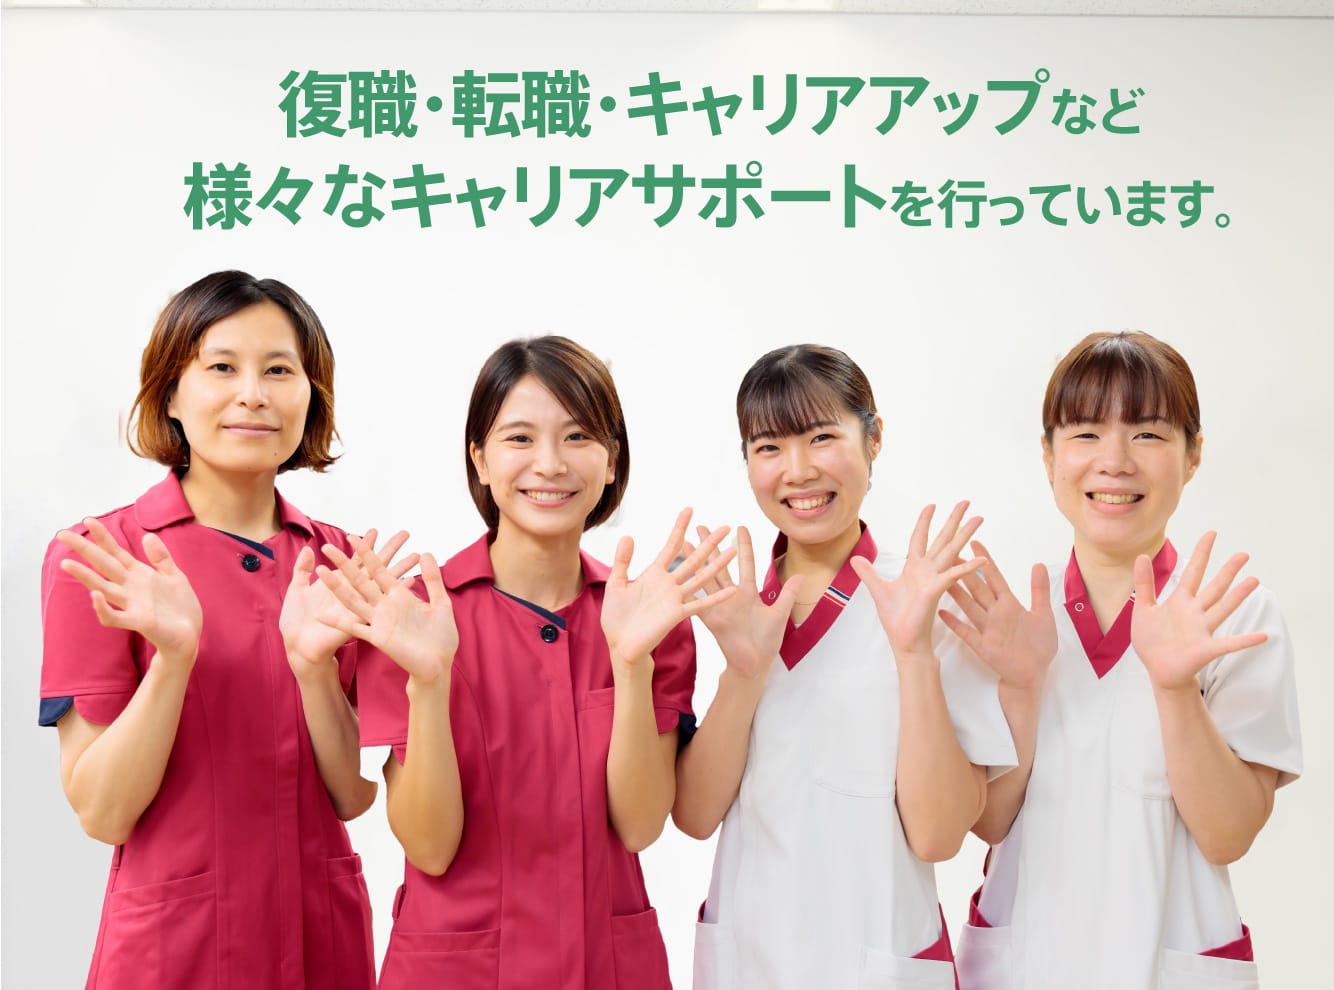 あなたと武田病院グループとの架け橋として
                                  働きたい人・働く人をこころを込めてサポートします。